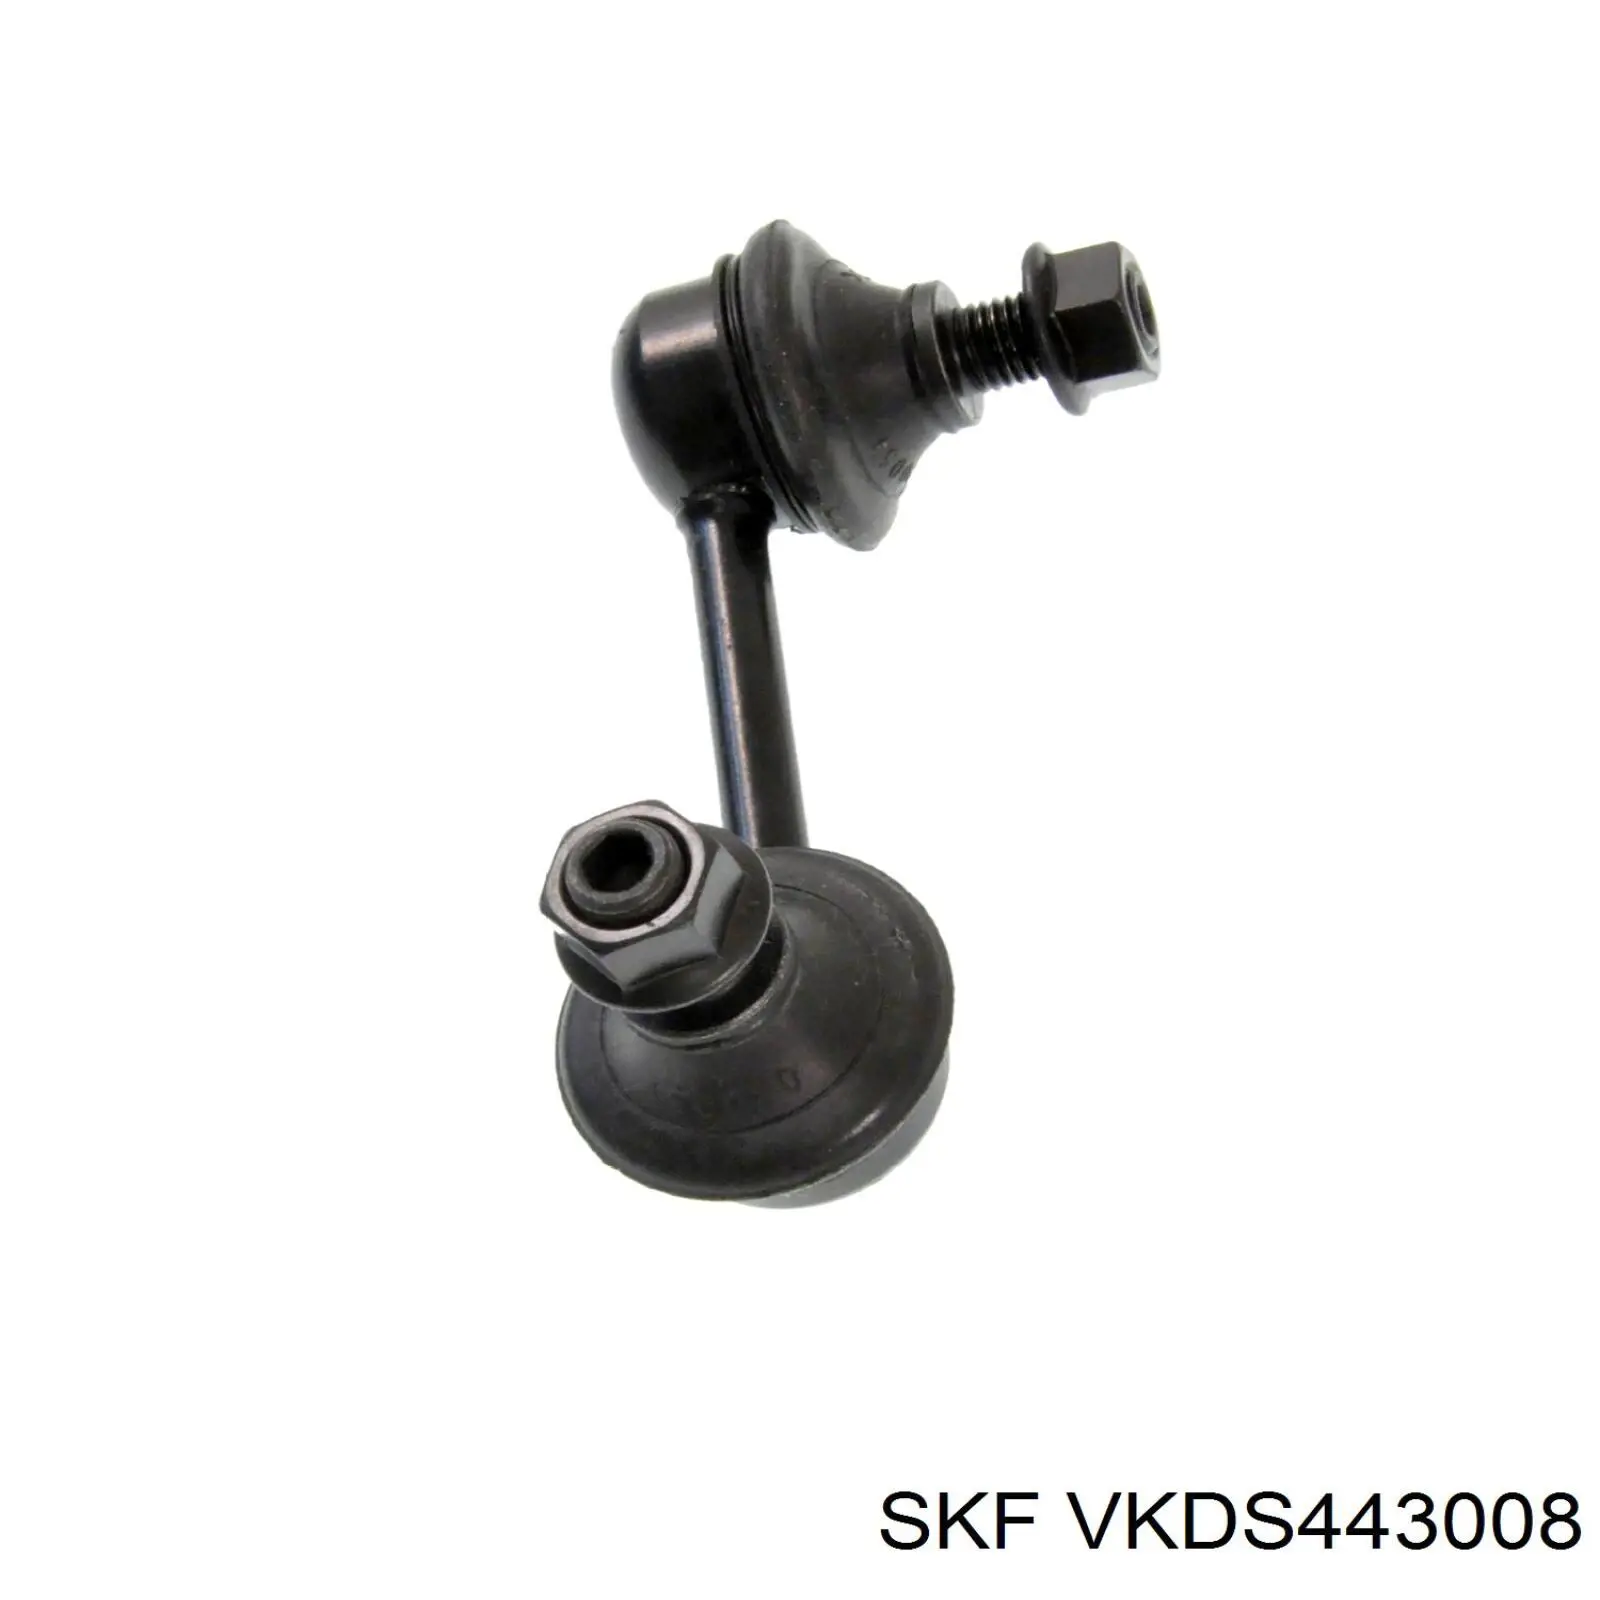 VKDS 443008 SKF barra estabilizadora trasera izquierda